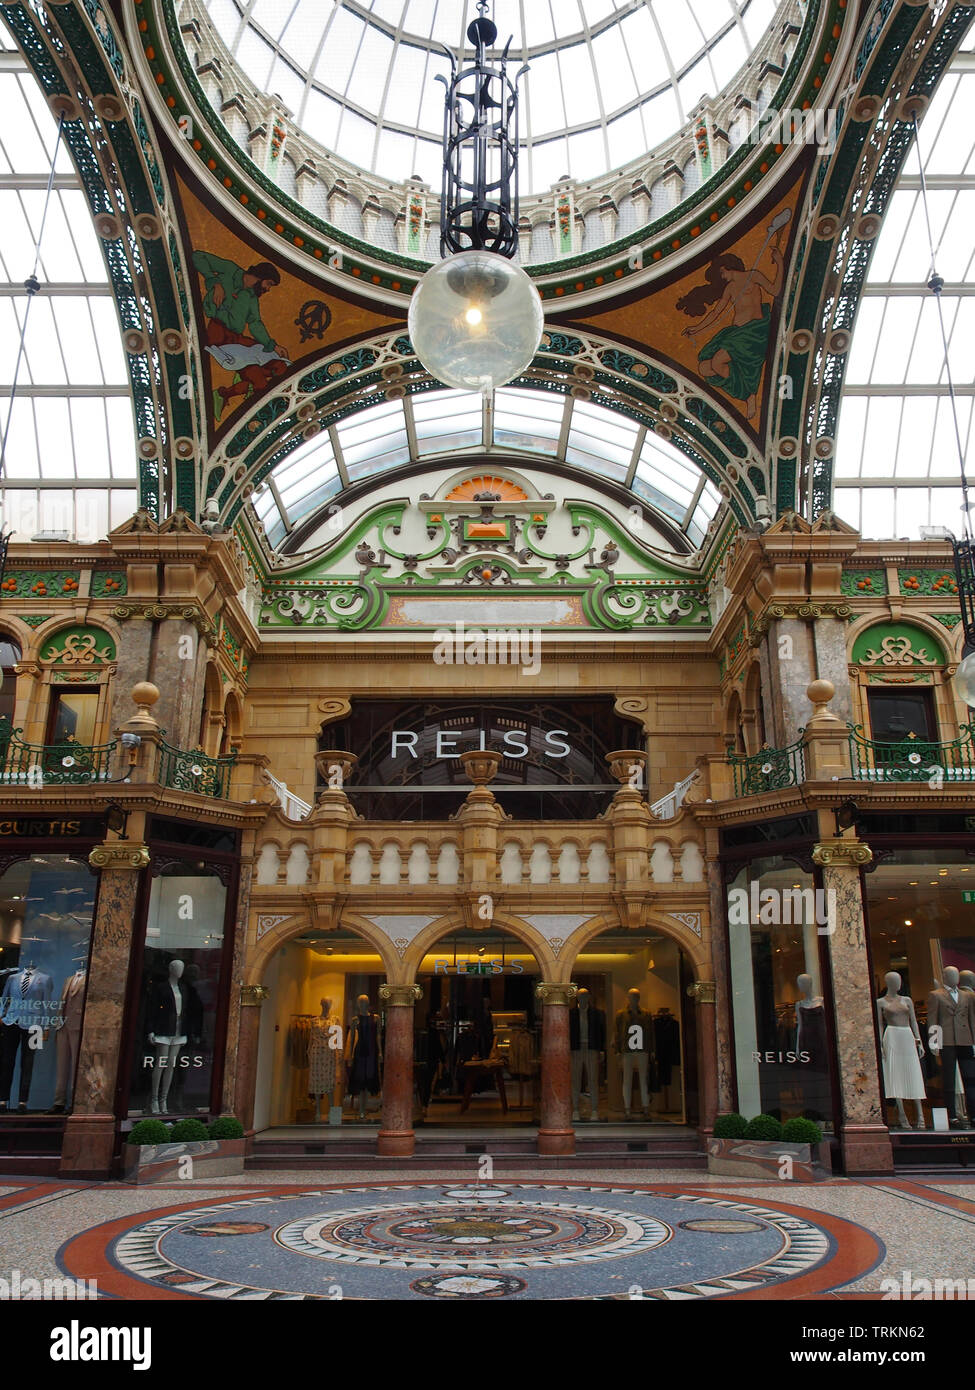 County Arcade nel quartiere di Victoria nel centro di Leeds, Yorkshire. Foto Stock